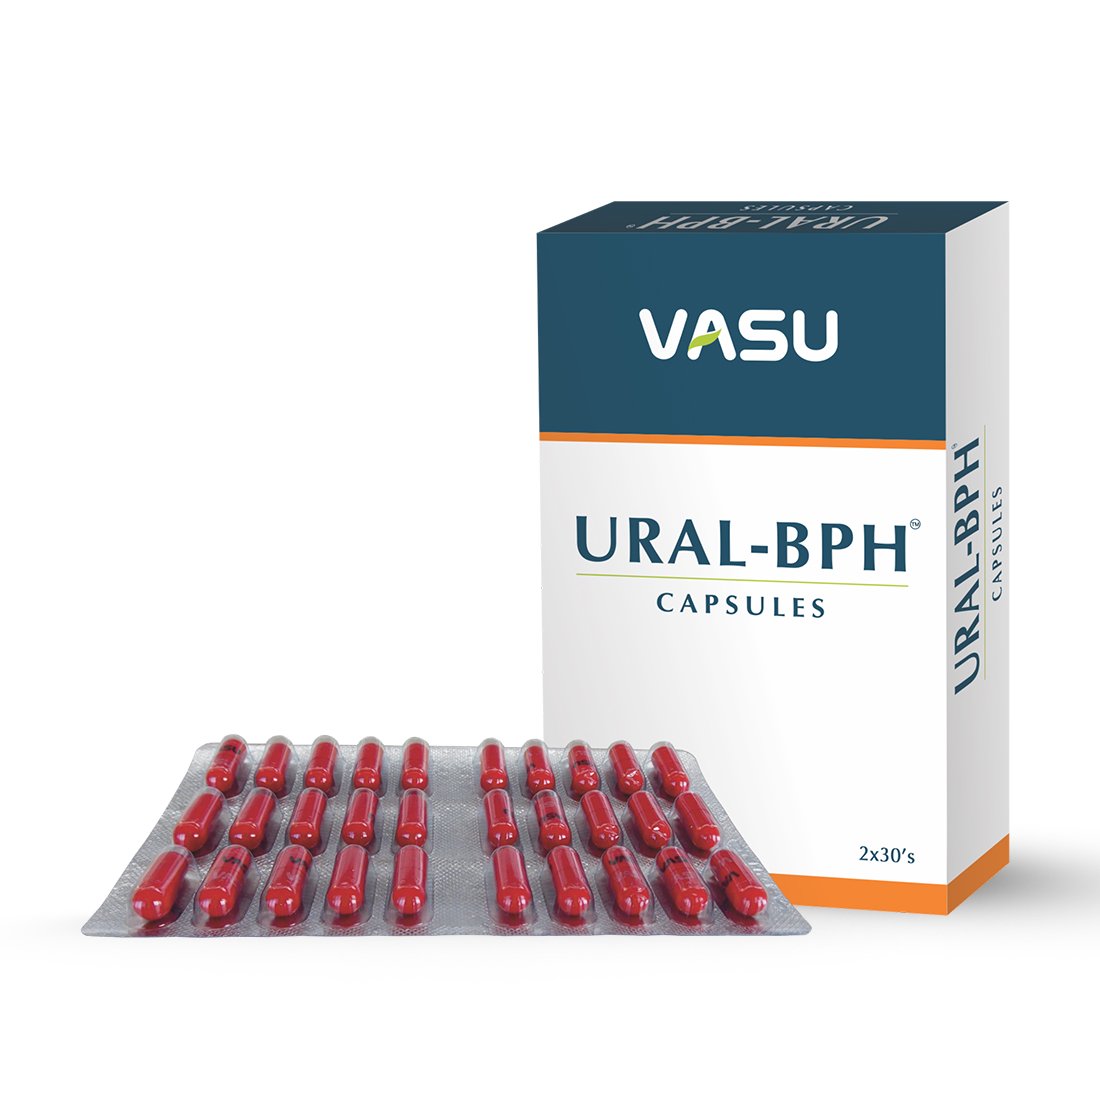 Buy Vasu Ural Bph Capsule at Best Price Online